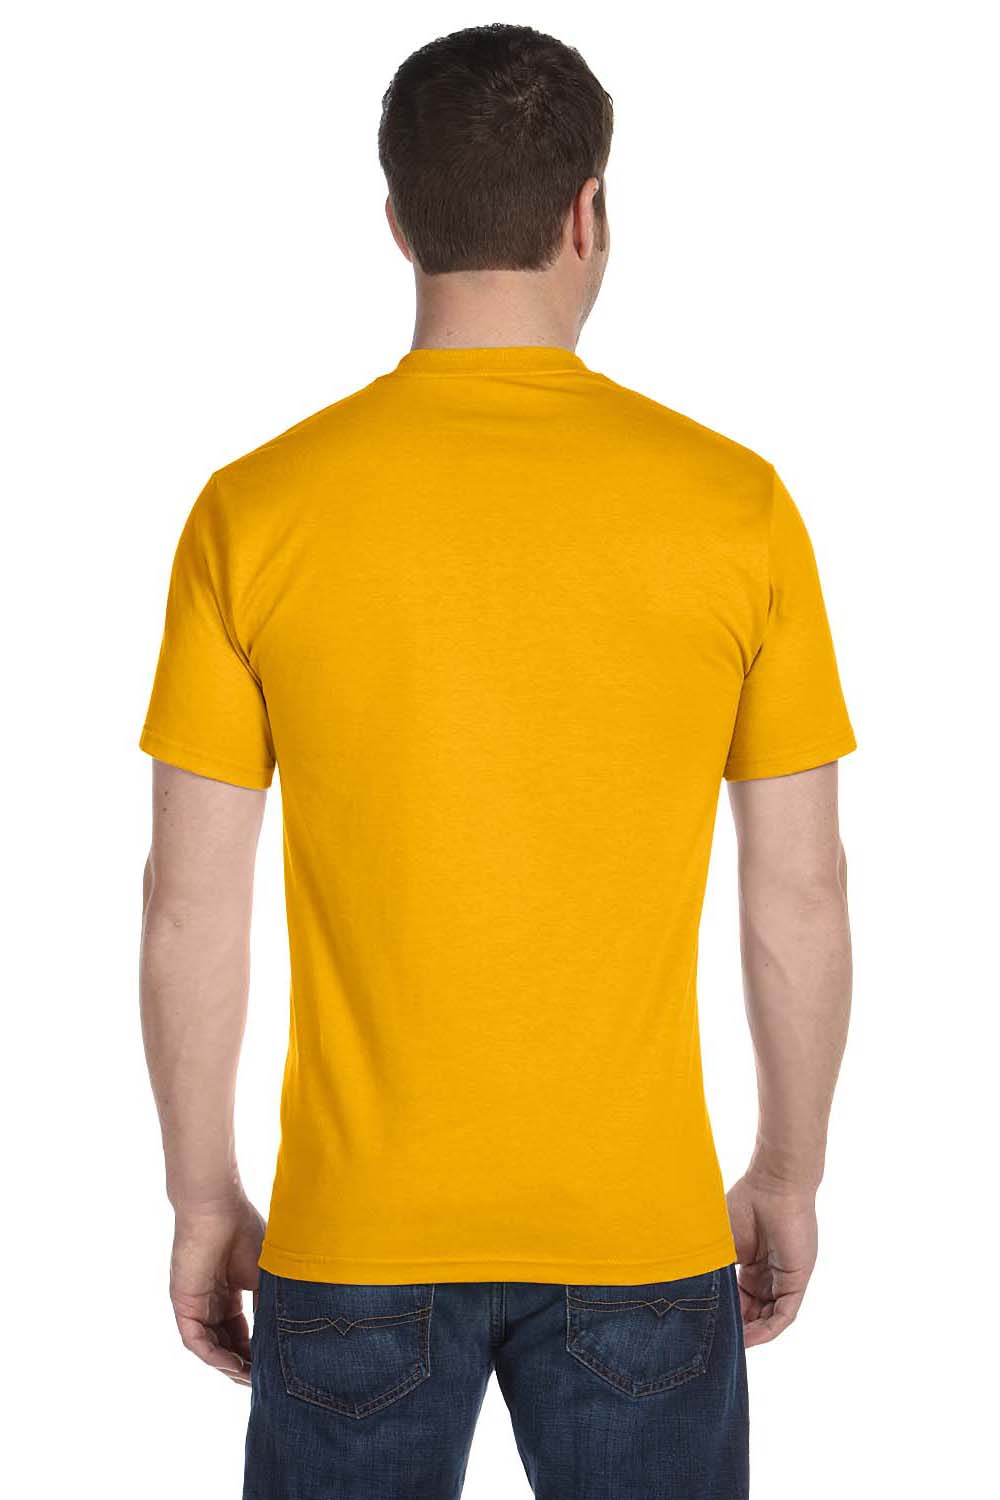 Gildan G800 Mens DryBlend Moisture Wicking Short Sleeve Crewneck T-Shirt Gold Back